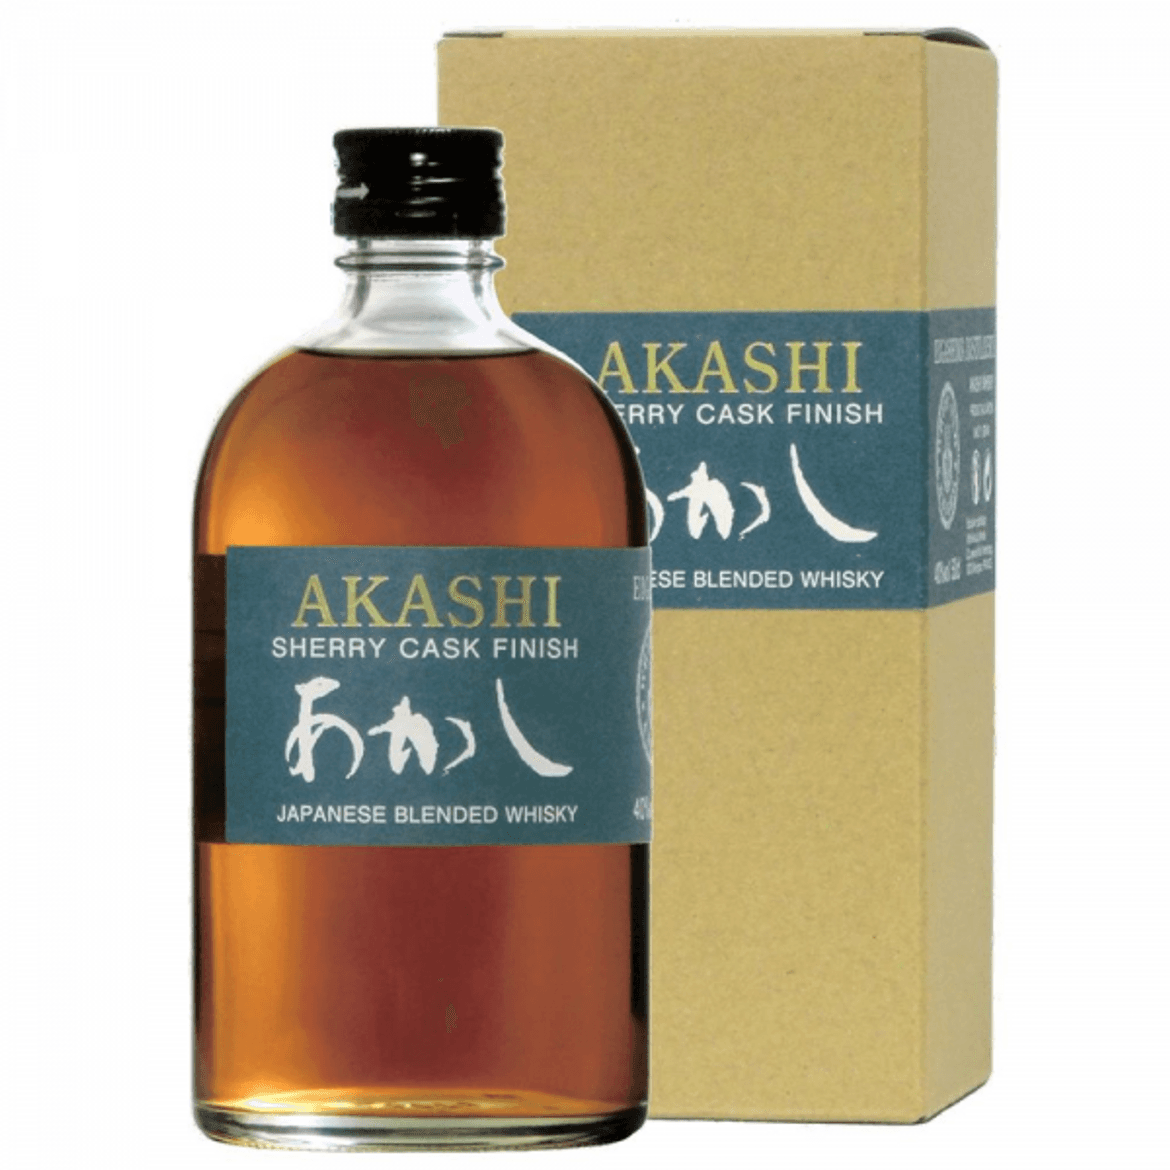 Akashi Blended Sherry Cask Finish 40%